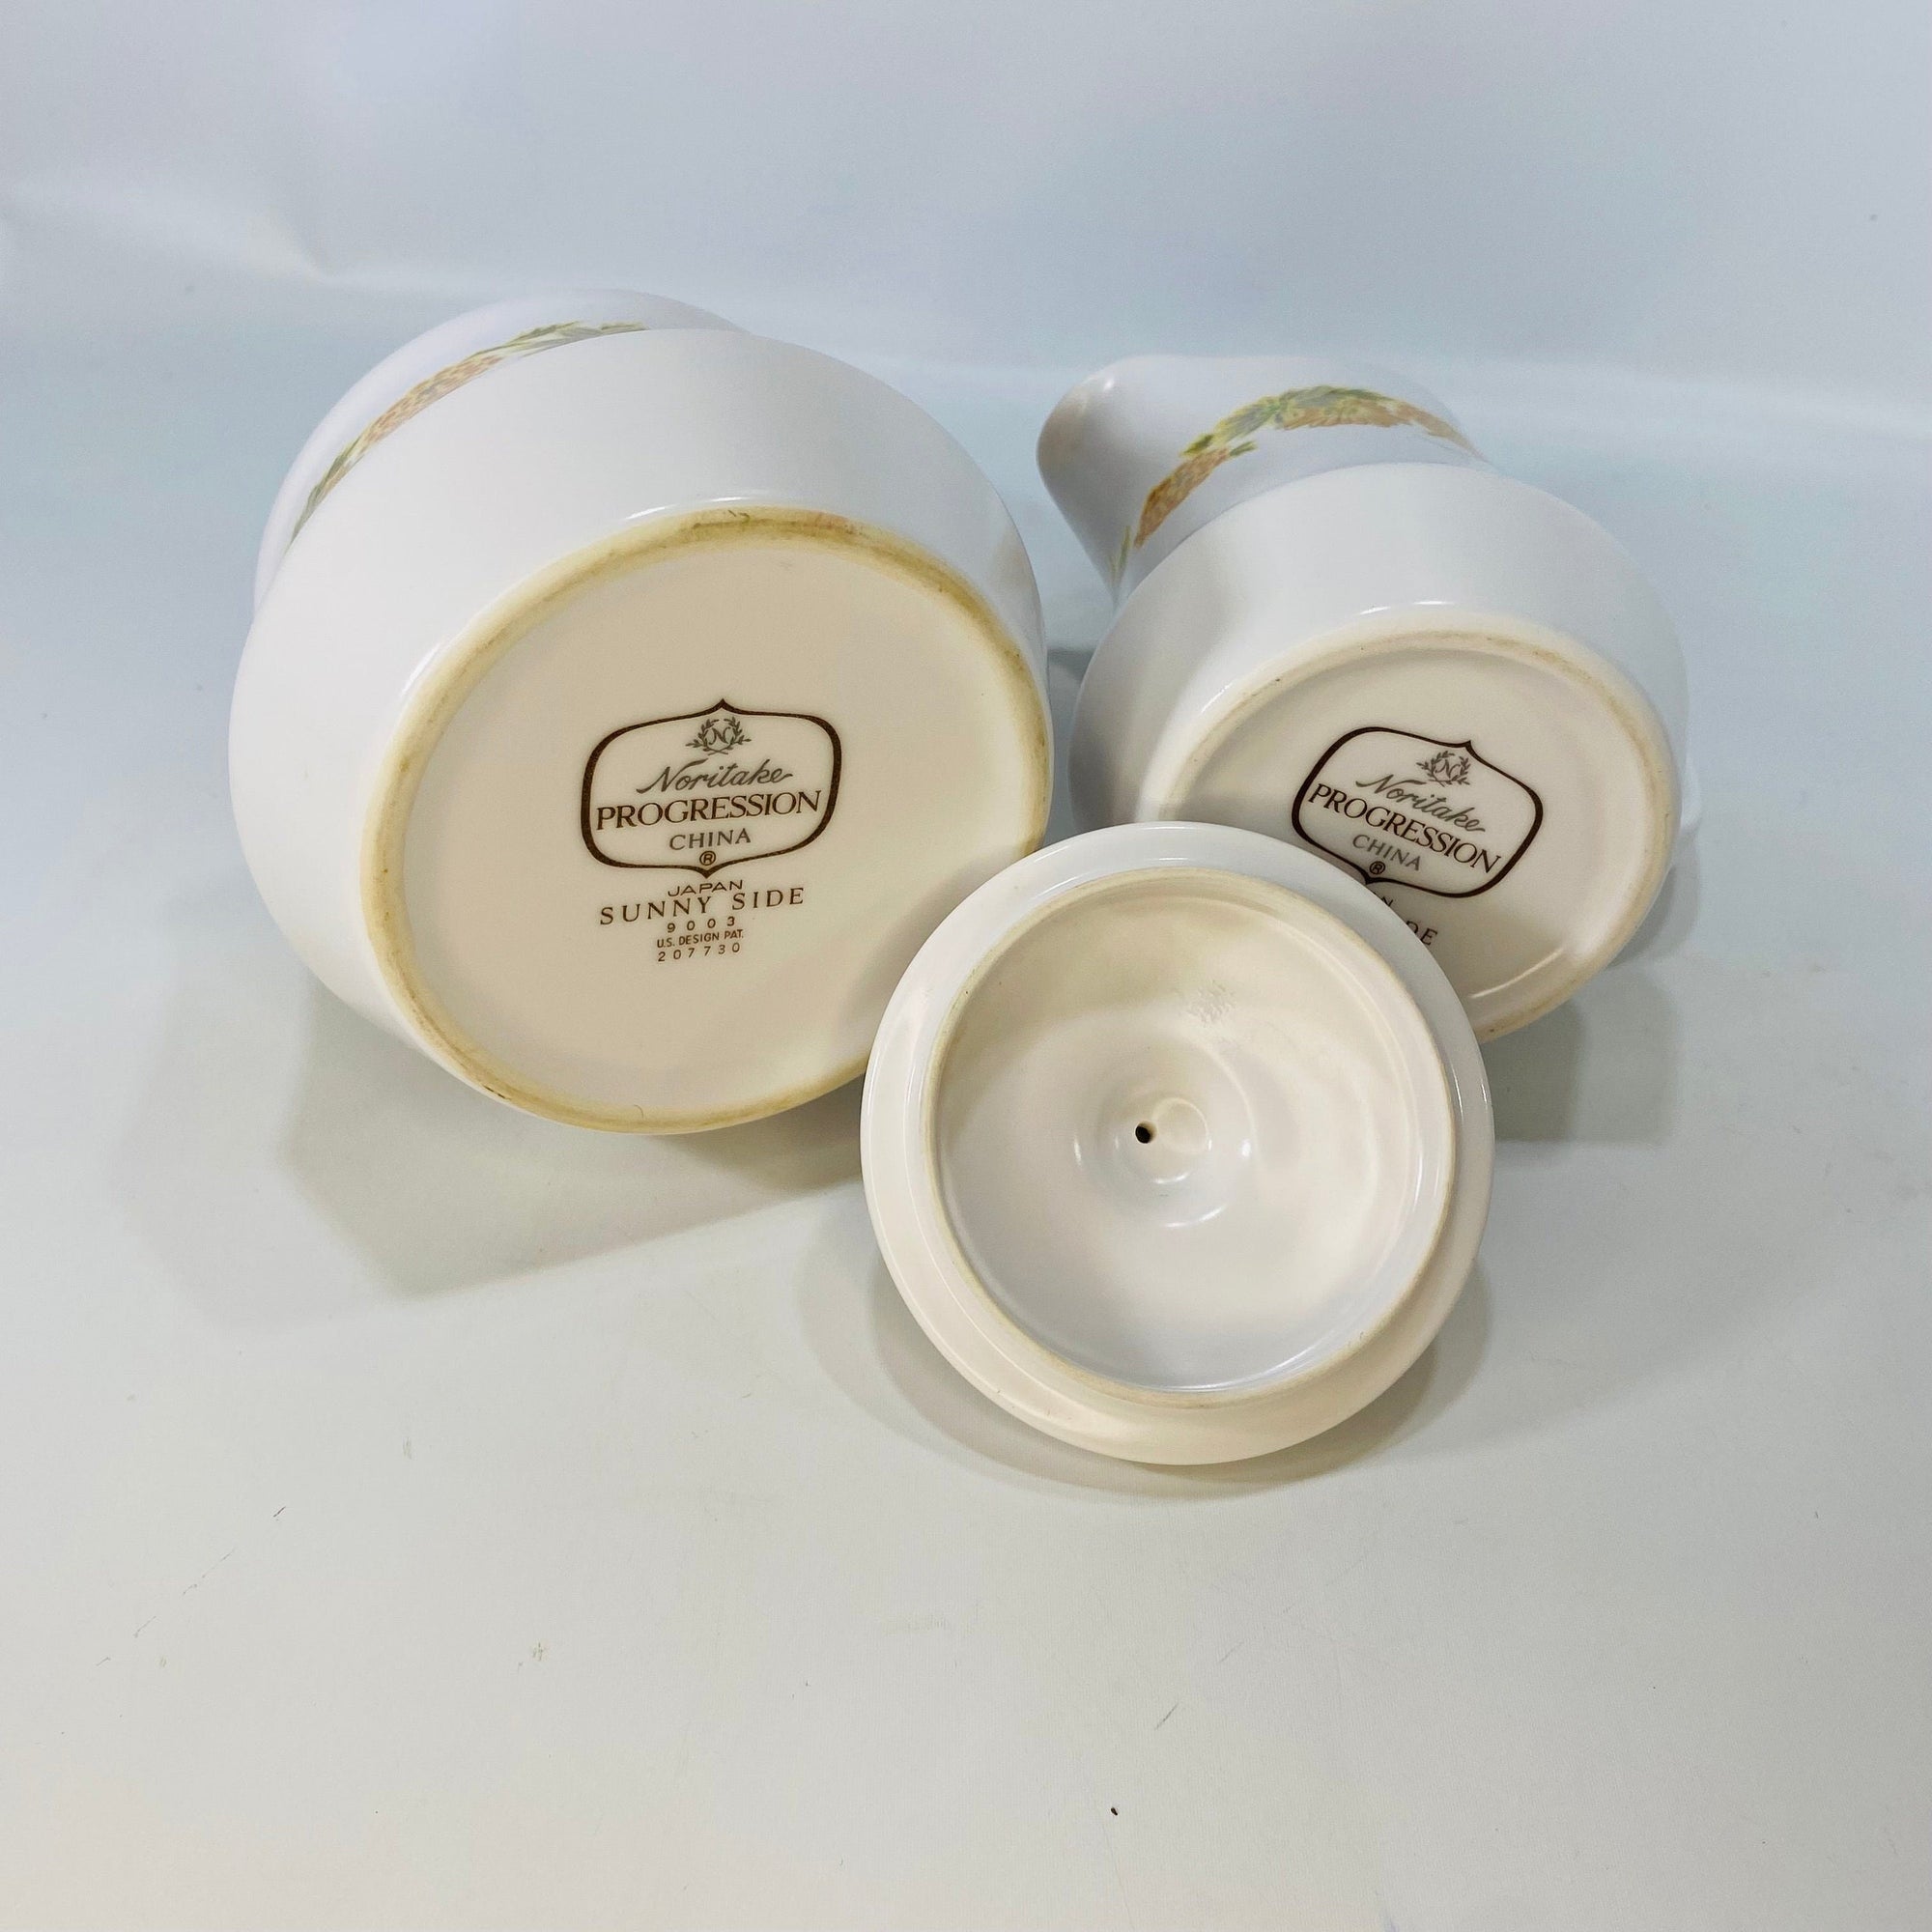 Vintage Noritake Progression Stoneware China Creamer and Sugar Bowl 9003 Design Pat 207730